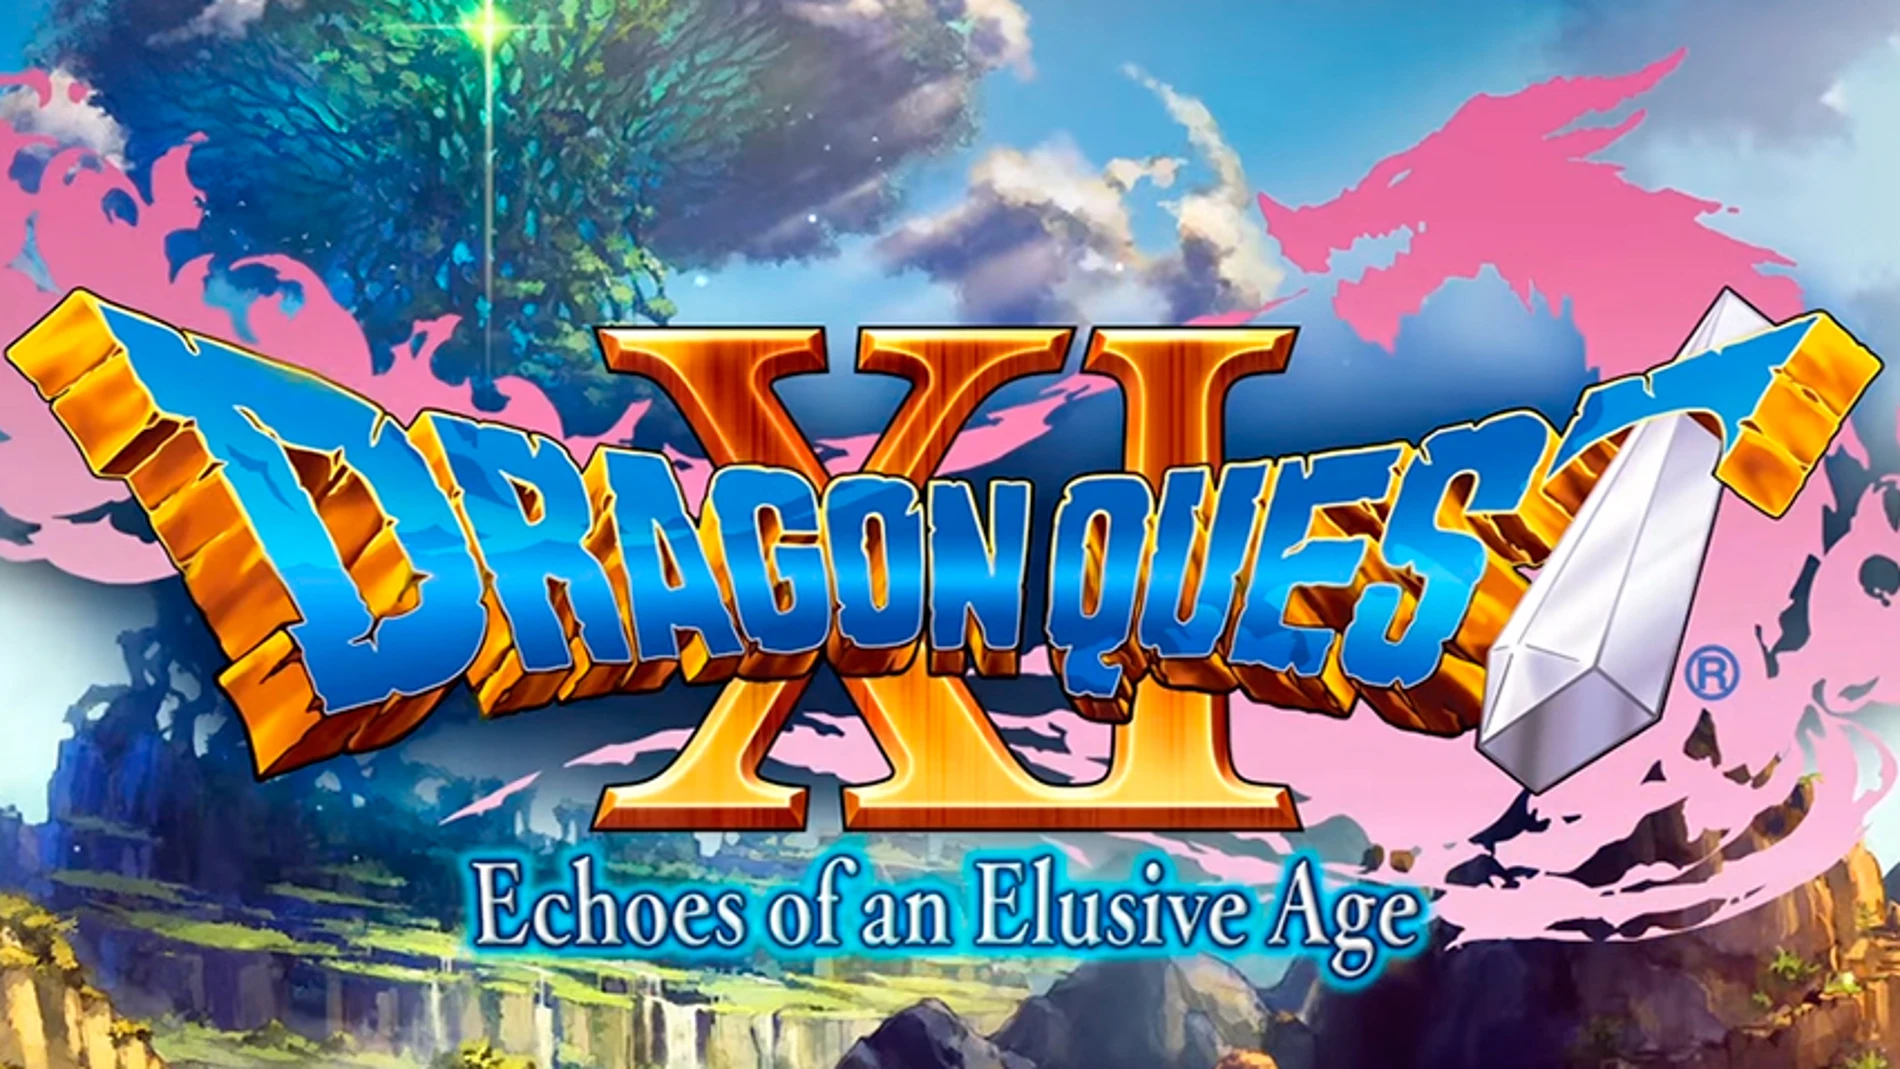 Square Enix confirma que Dragon Quest XI se estrenará en occidente en 2018